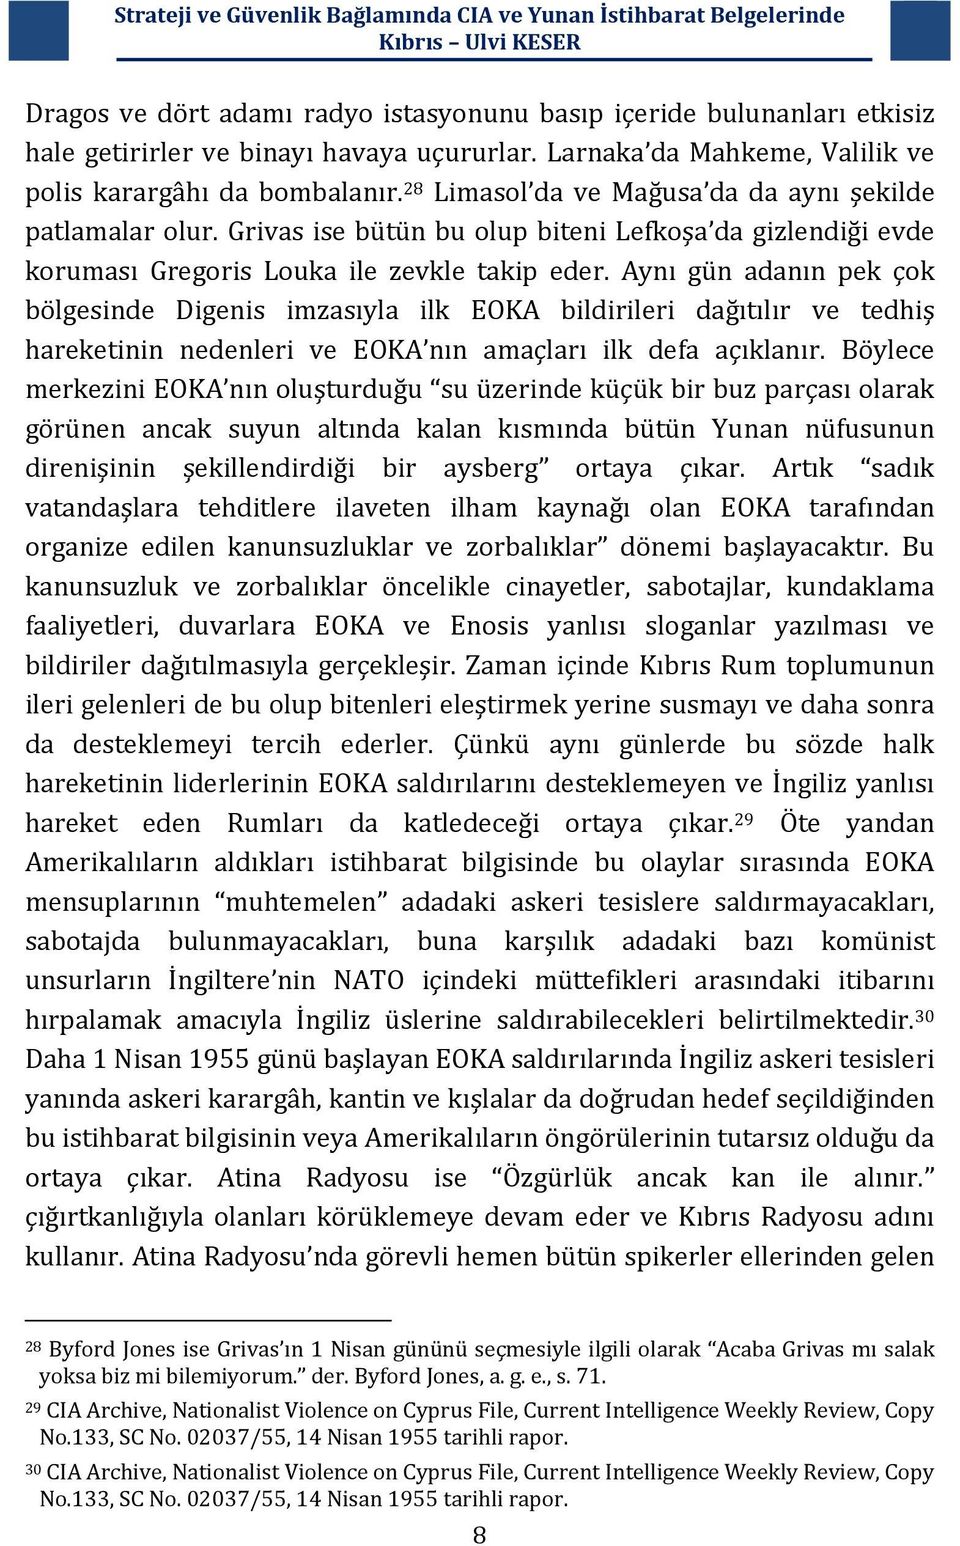 Aynı gün adanın pek çok bölgesinde Digenis imzasıyla ilk EOKA bildirileri dağıtılır ve tedhiş hareketinin nedenleri ve EOKA nın amaçları ilk defa açıklanır.